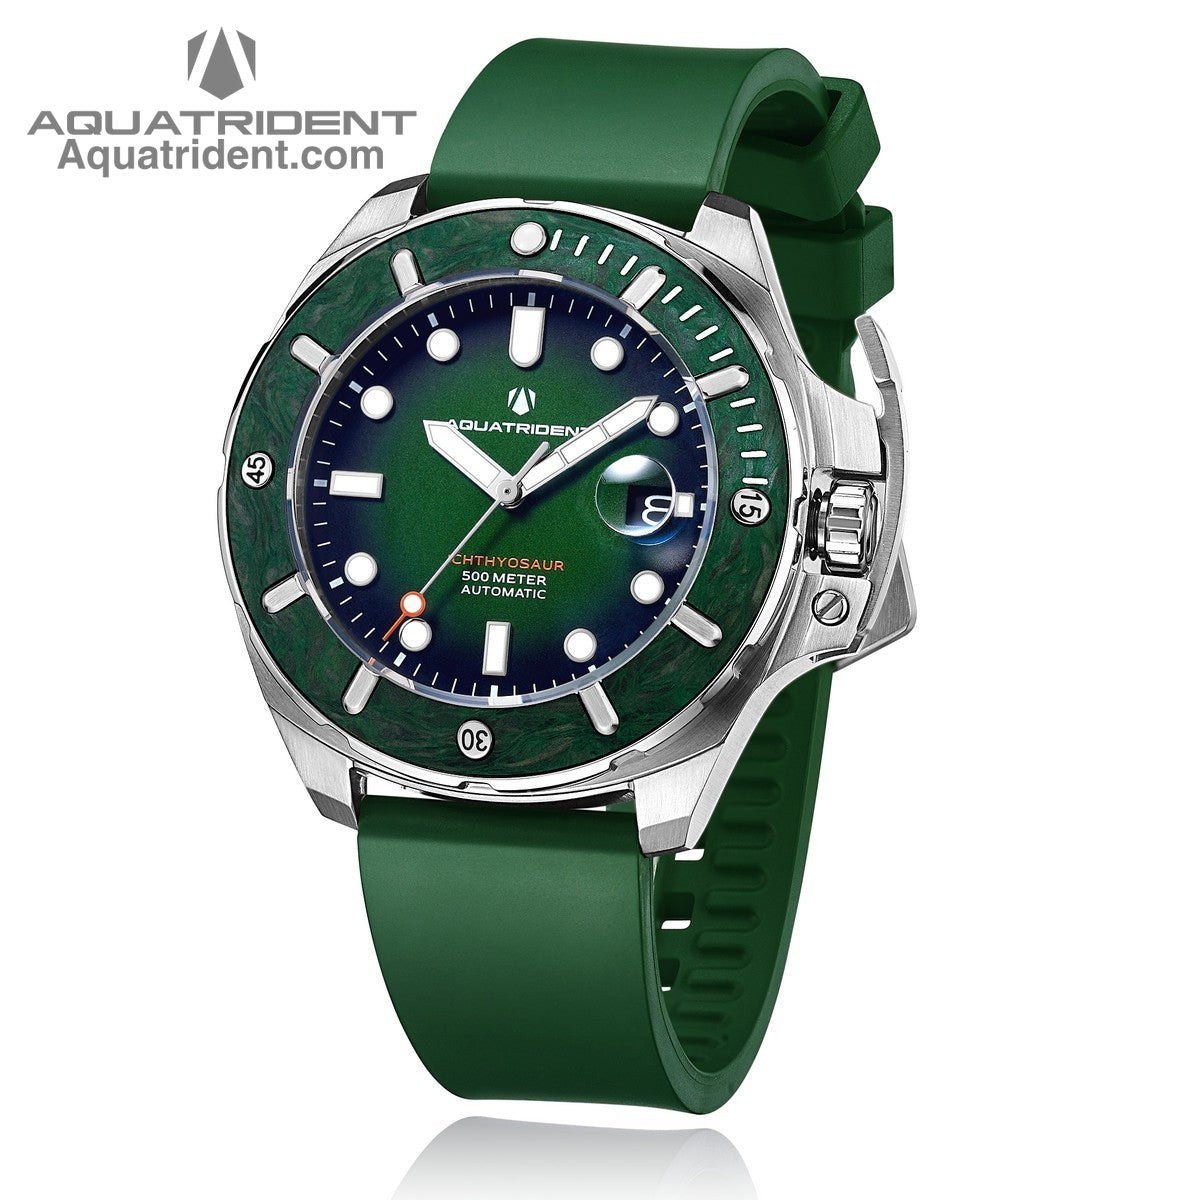 steel case-green marbled carbon fiber bezel-green dail-green fluororubber strap-watch